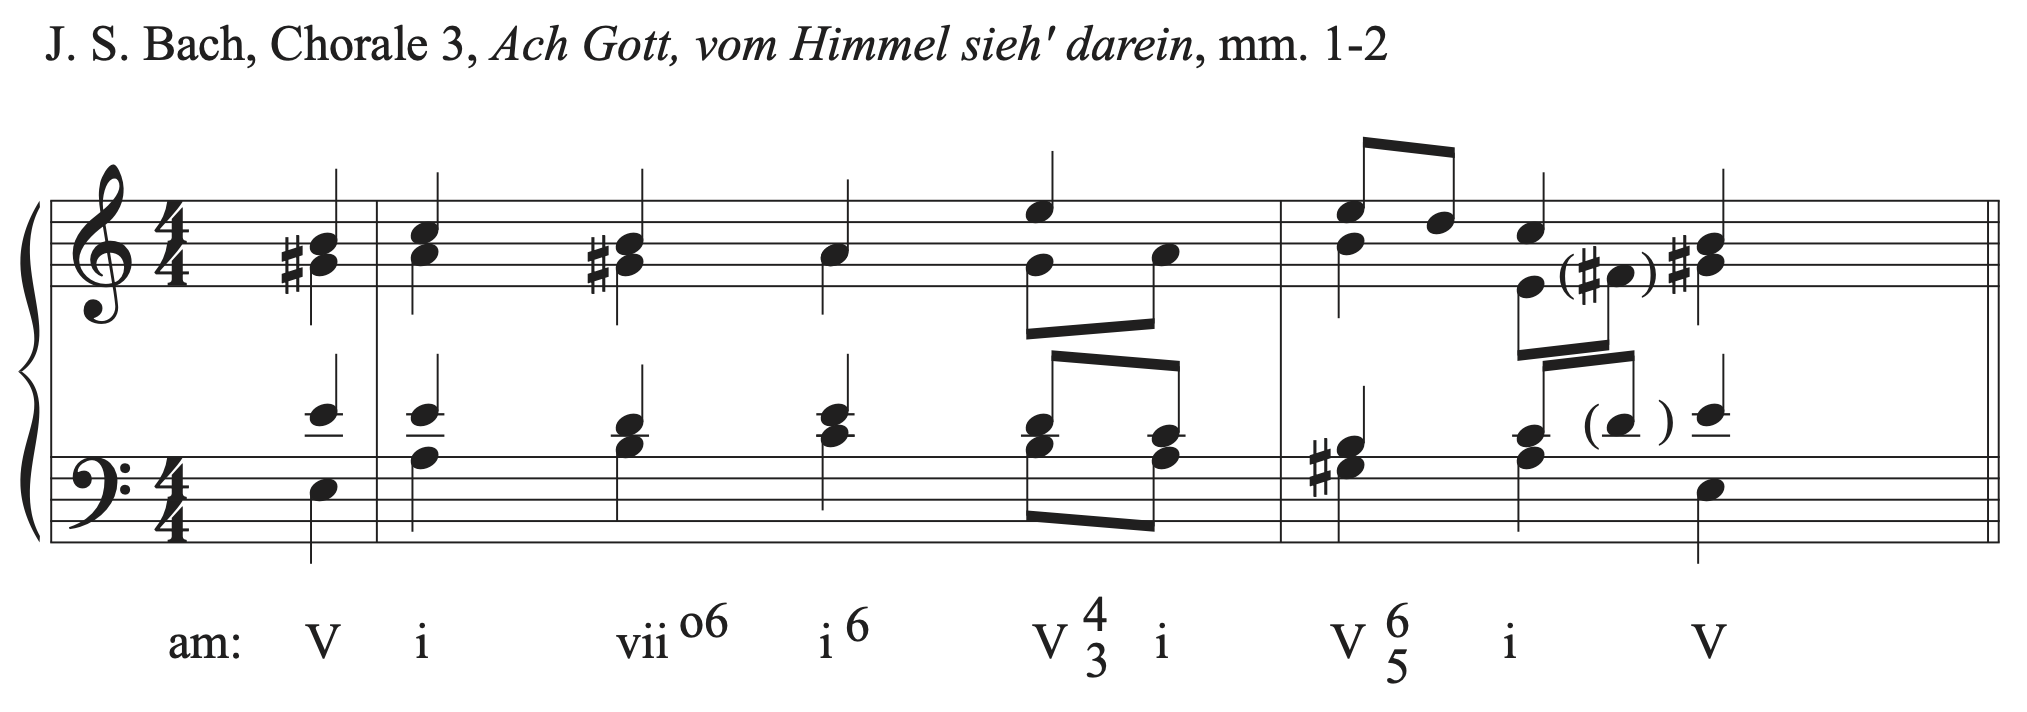 Excerpt from J.S. Bach's Chorale 3, Ach Gott, vom Himmel sieh'darein, measures 1 to 2.